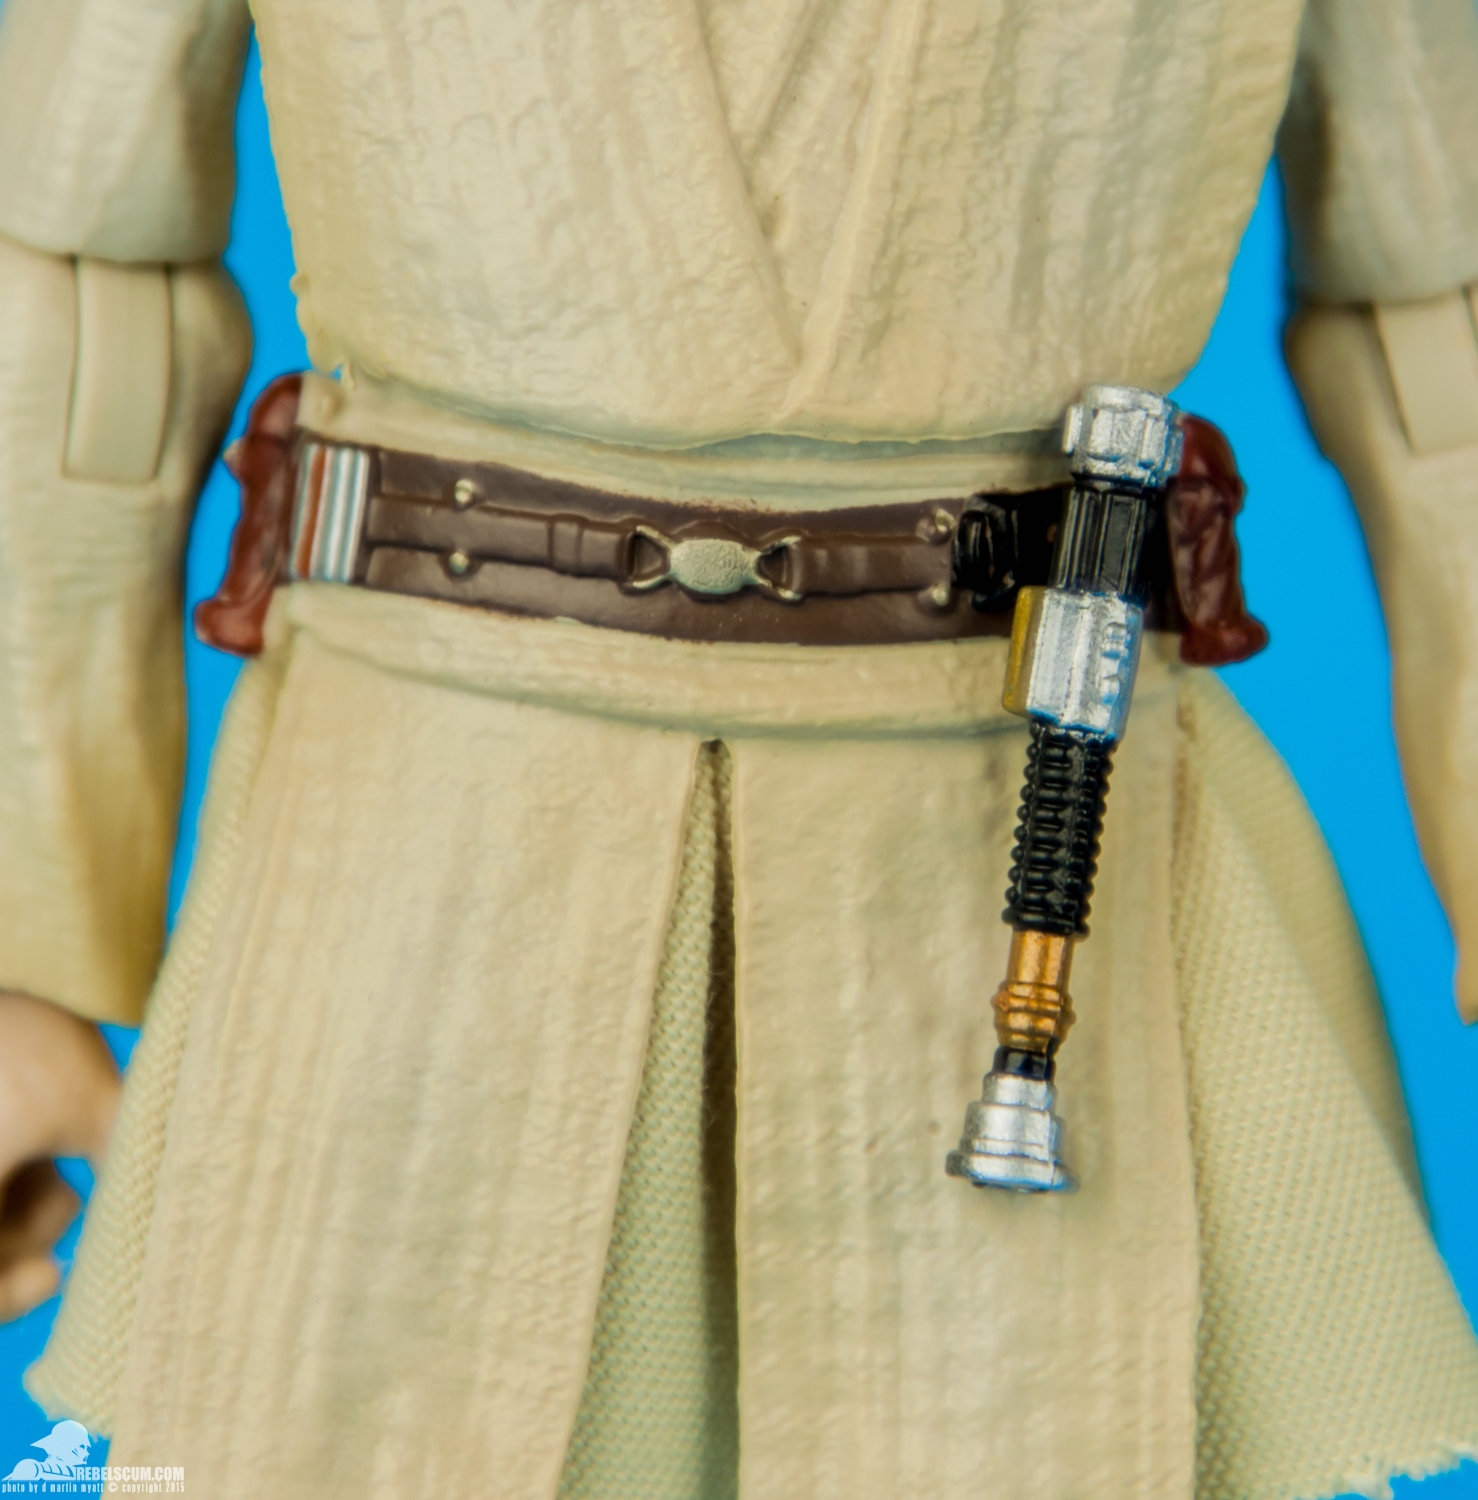 08-Obi-Wan-Kenobi-The-Black-Series-Blue-6-Inch-008.jpg